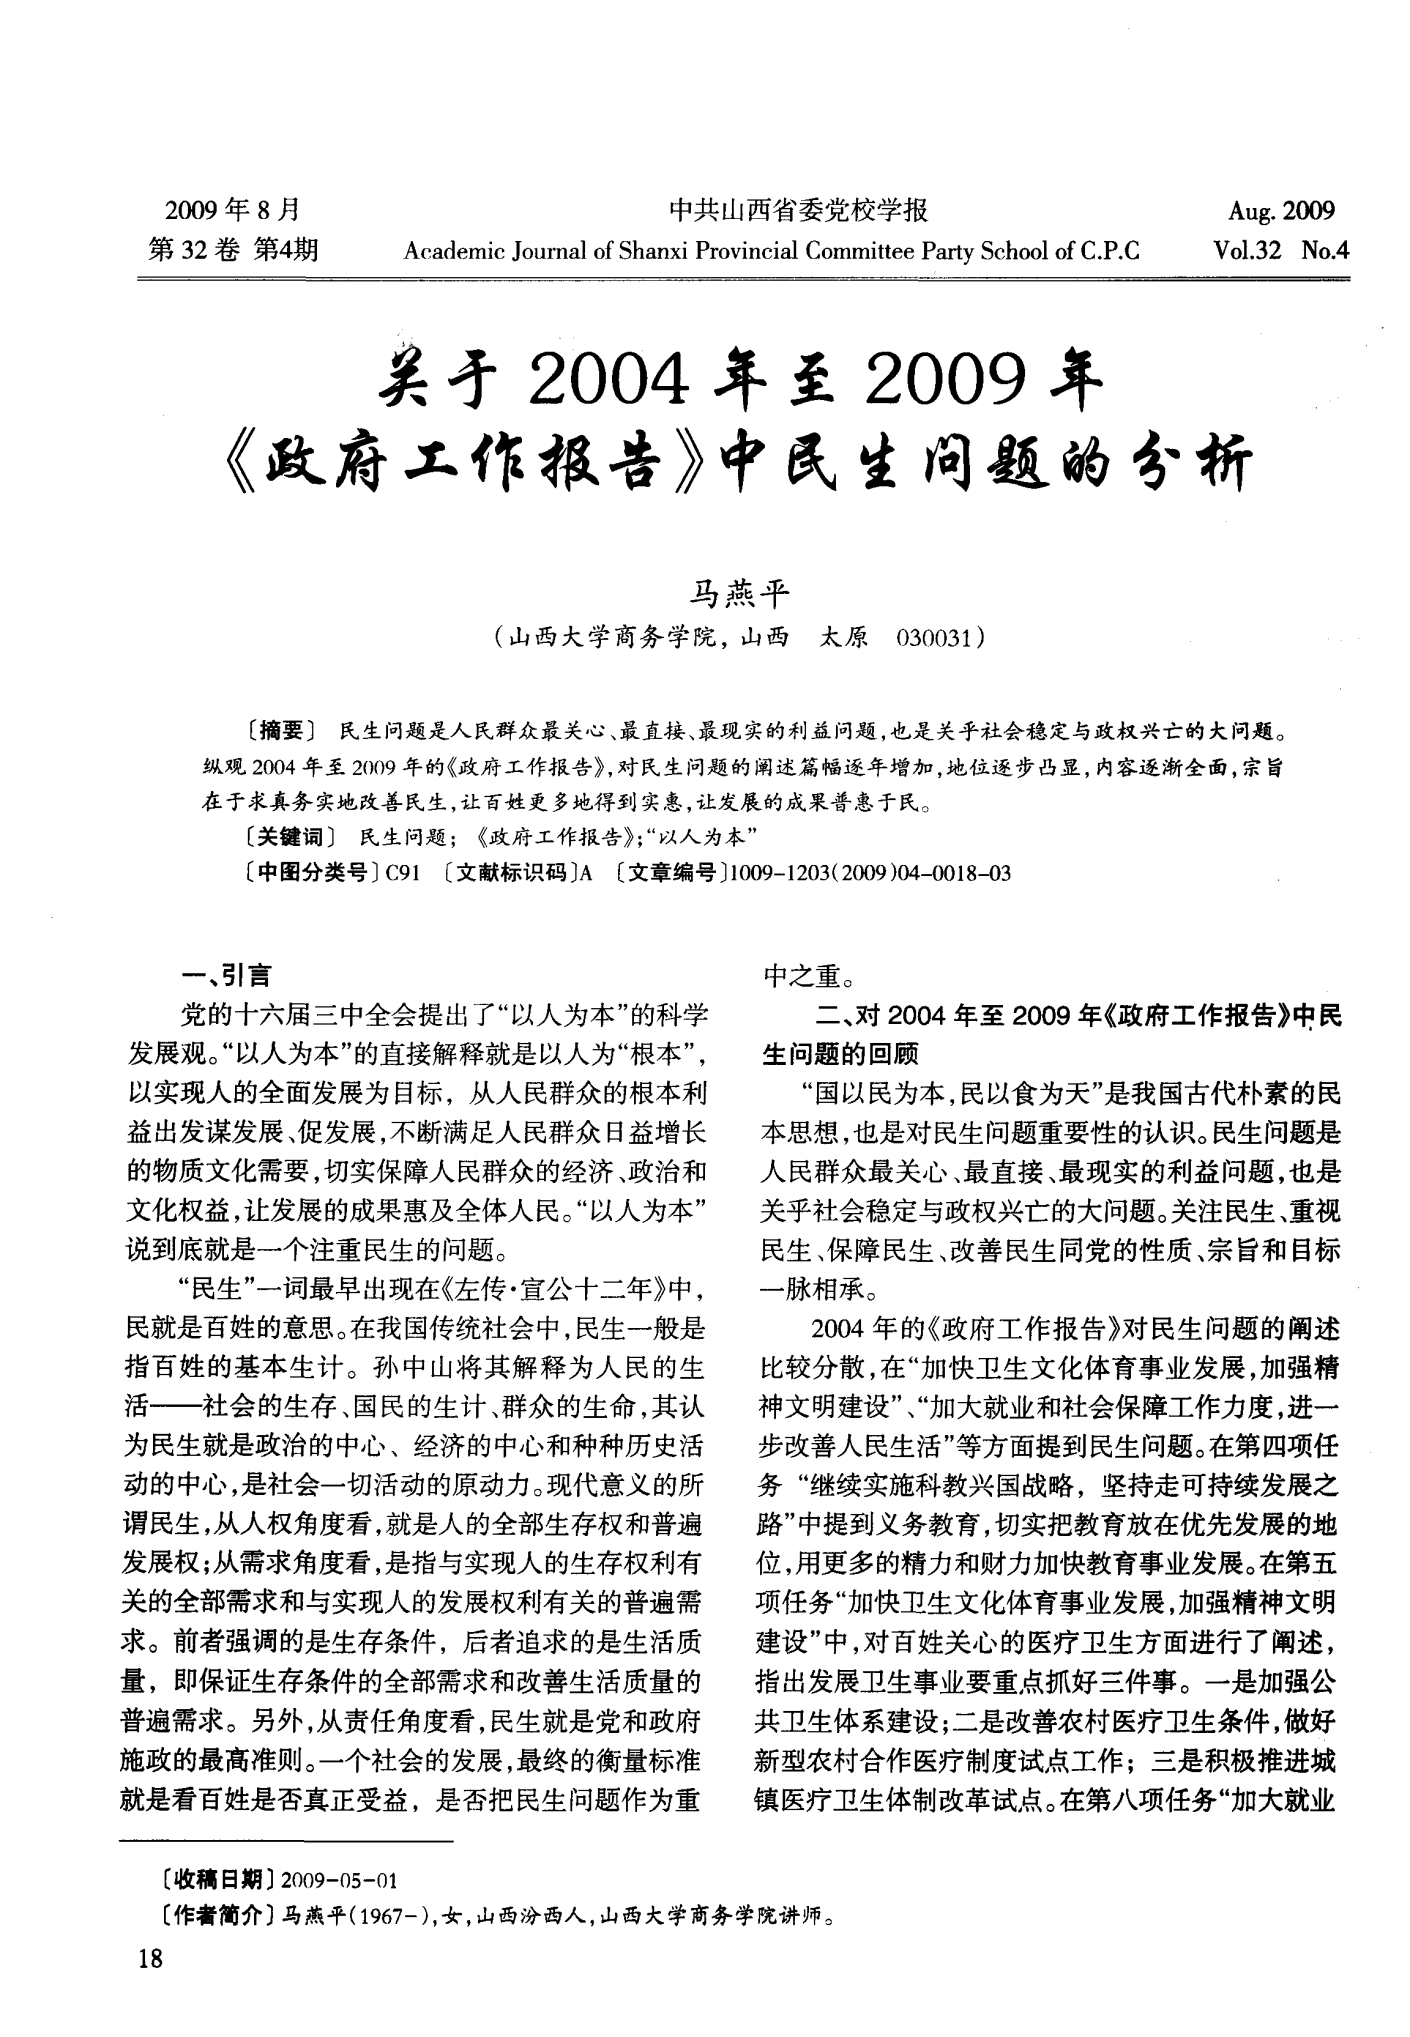 关于2004年至2009年《政府工作报告》中民生问题的分析